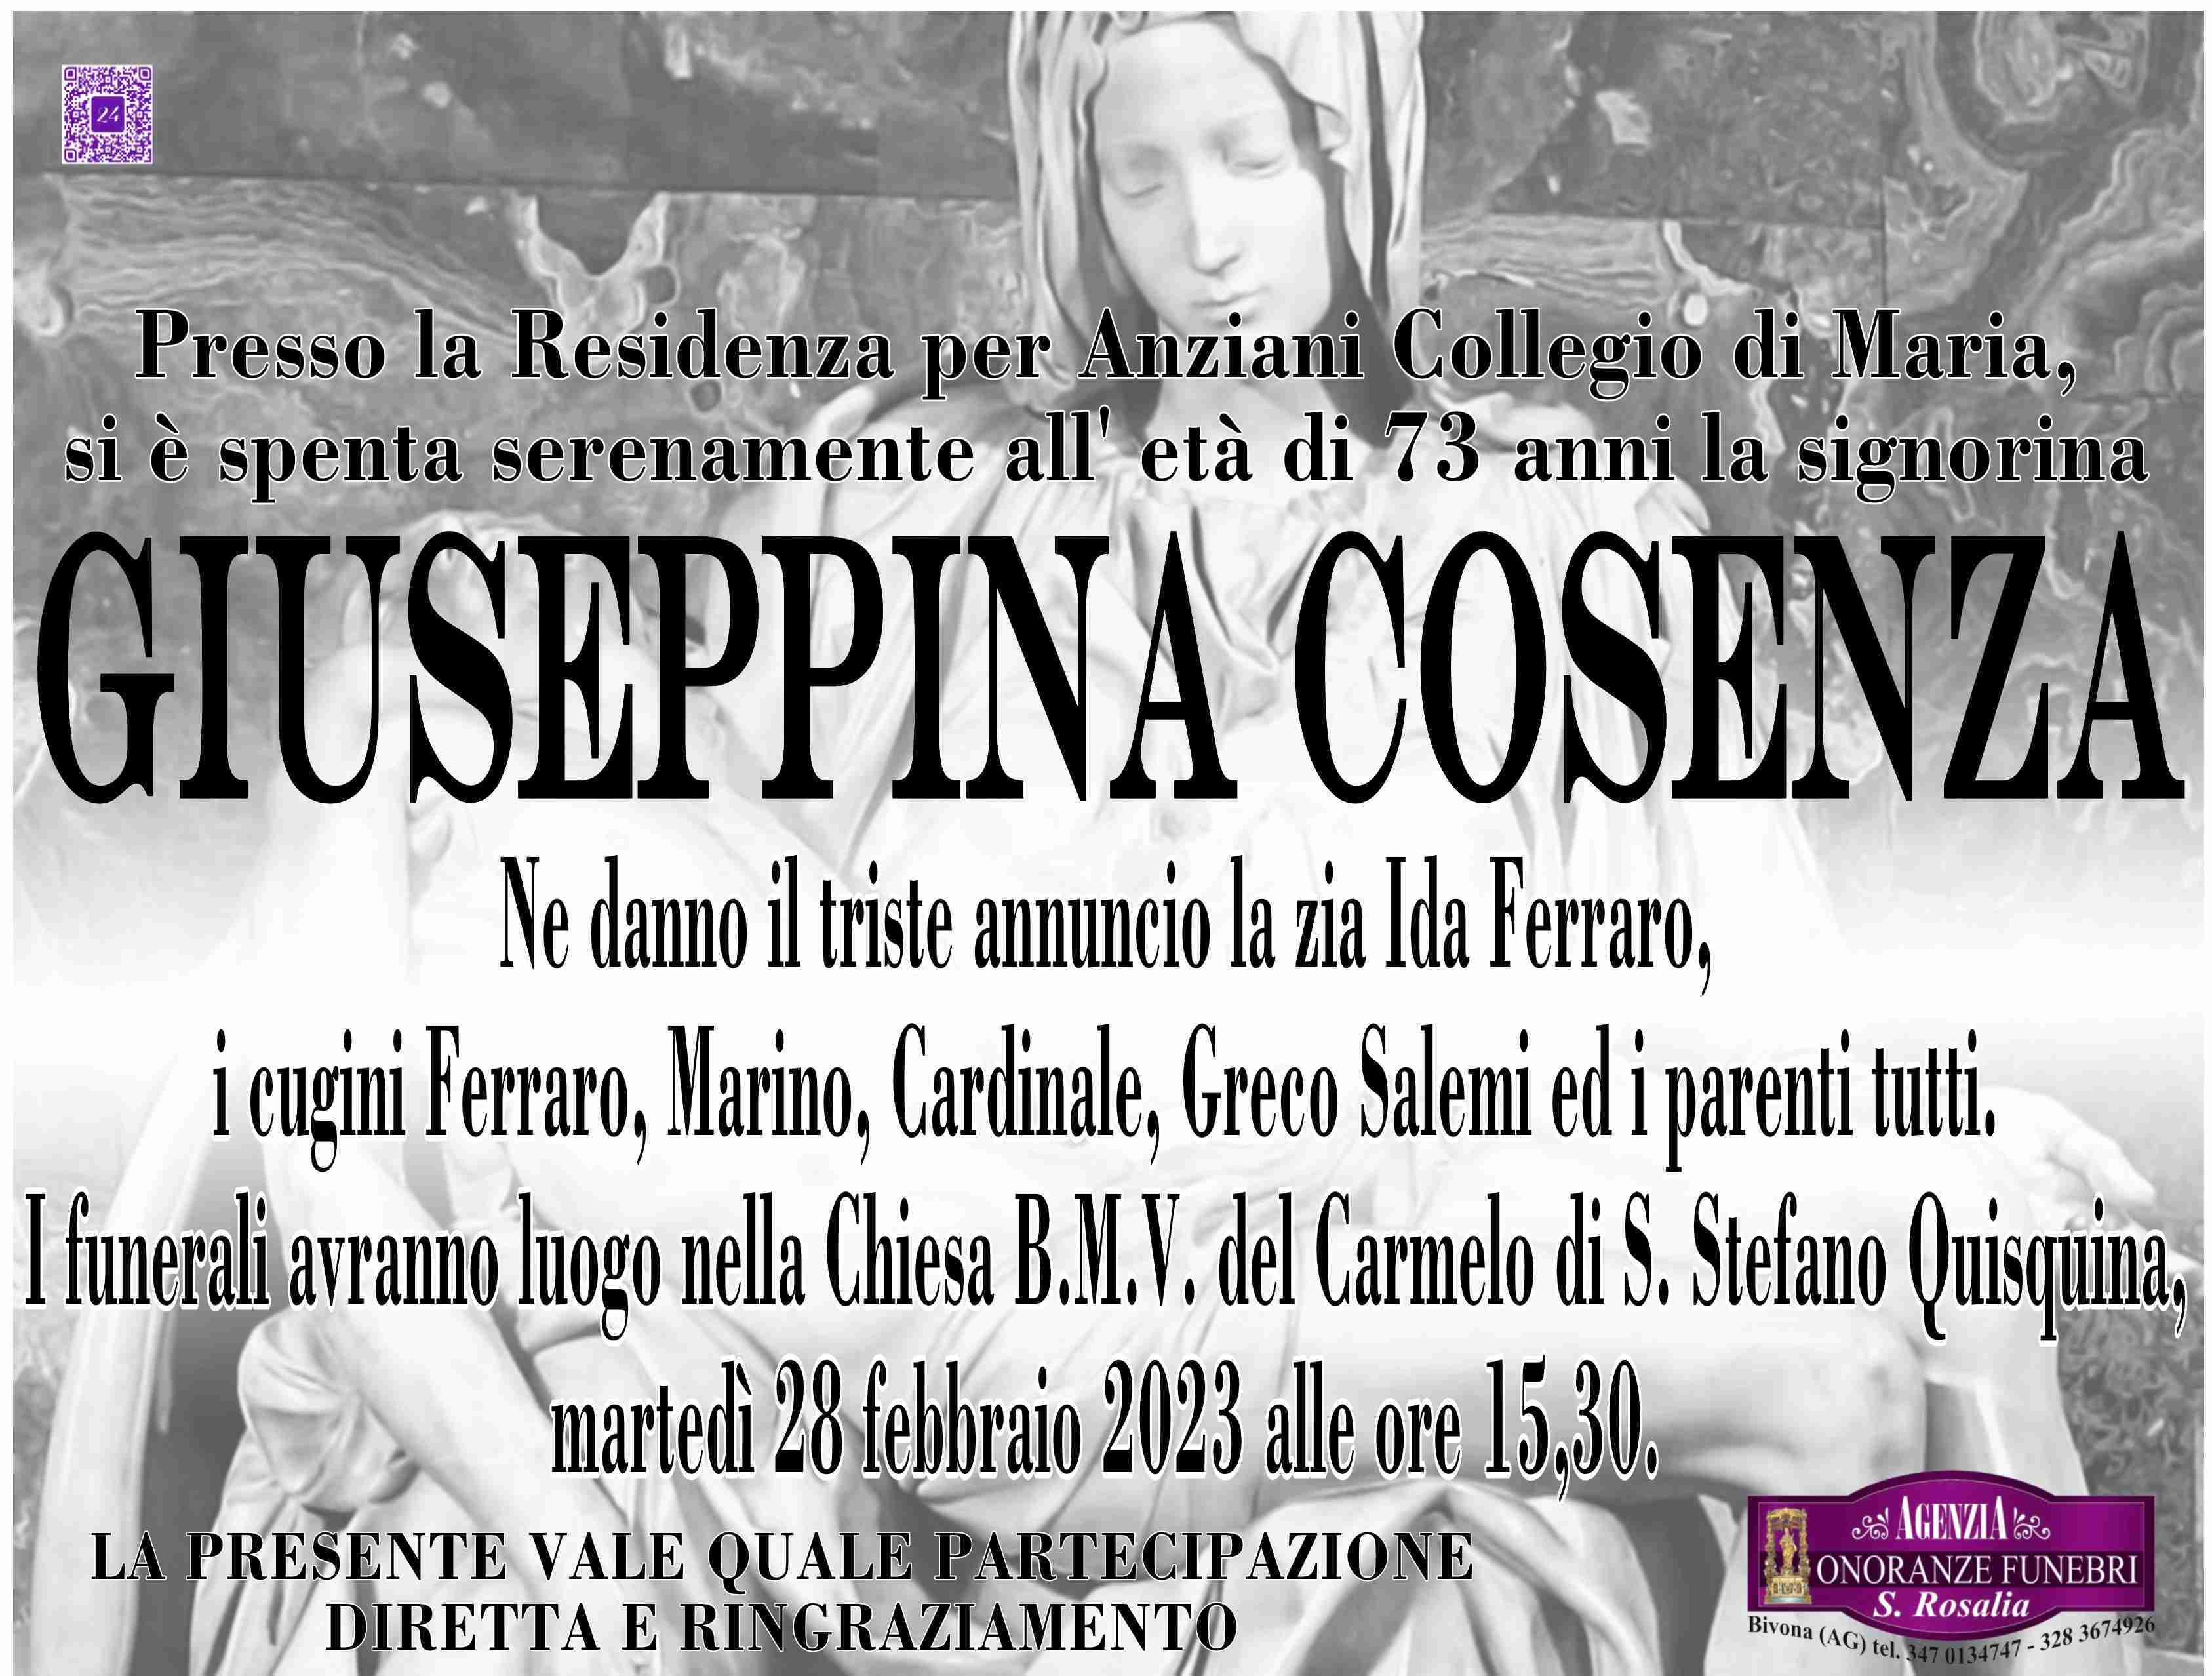 Giuseppina Cosenza